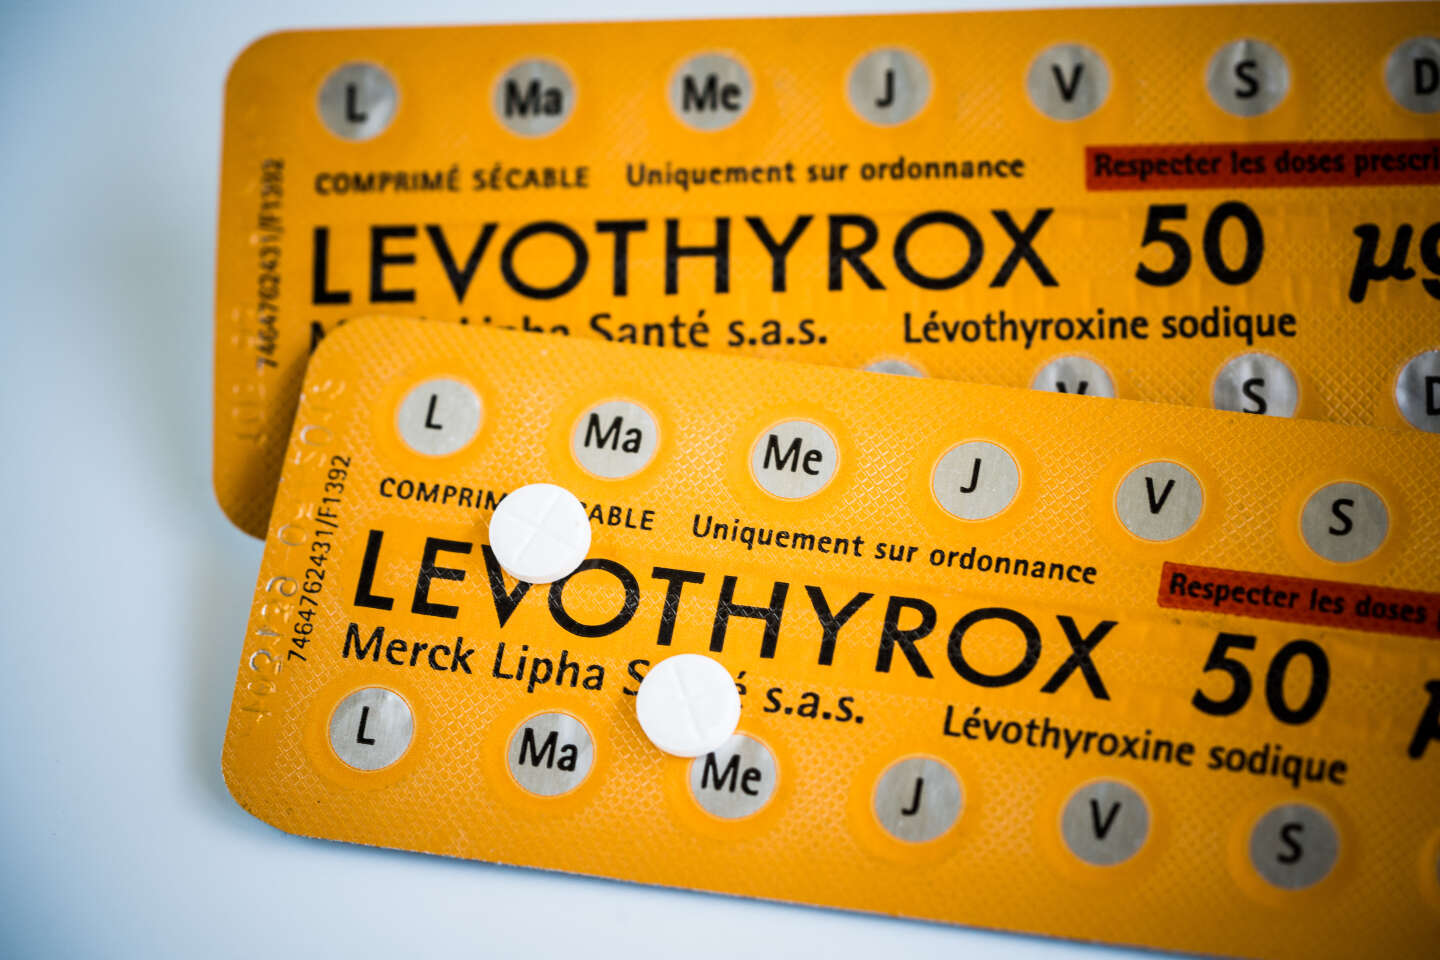 Levothyrox : l'Agence nationale du médicament mise en examen pour « tromperie » - Le Monde